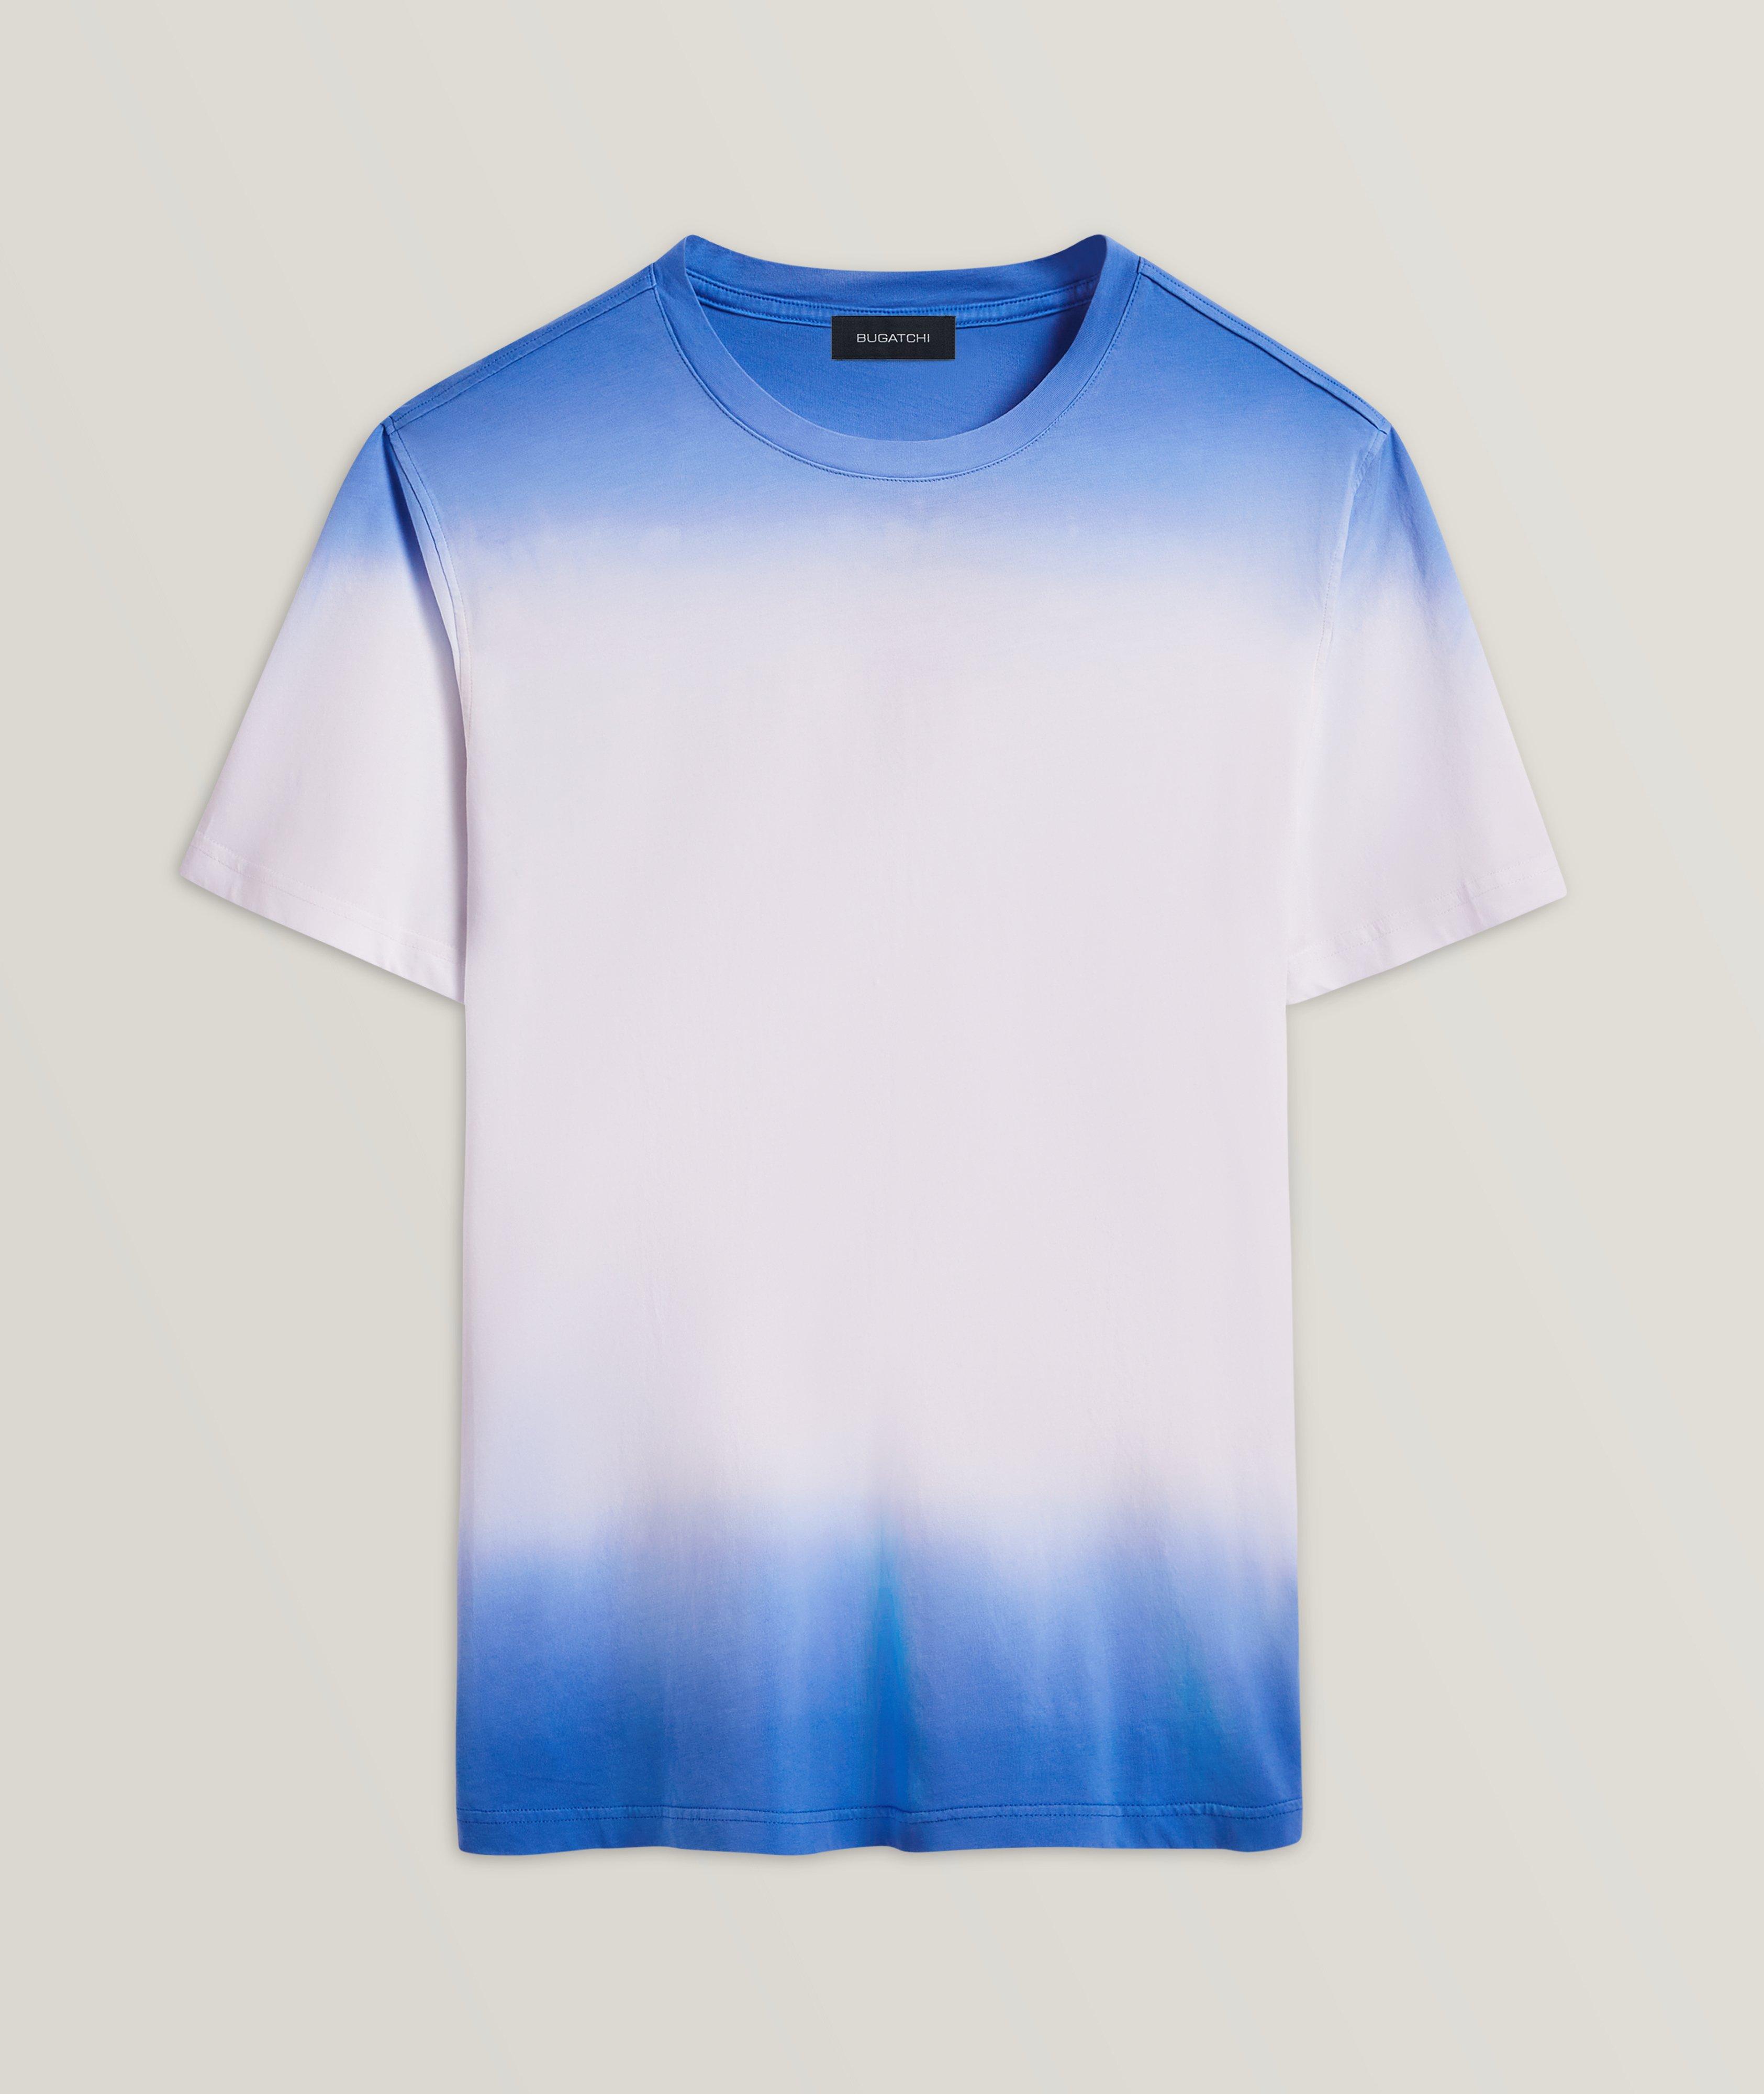 Gradient Cotton T-Shirt image 0